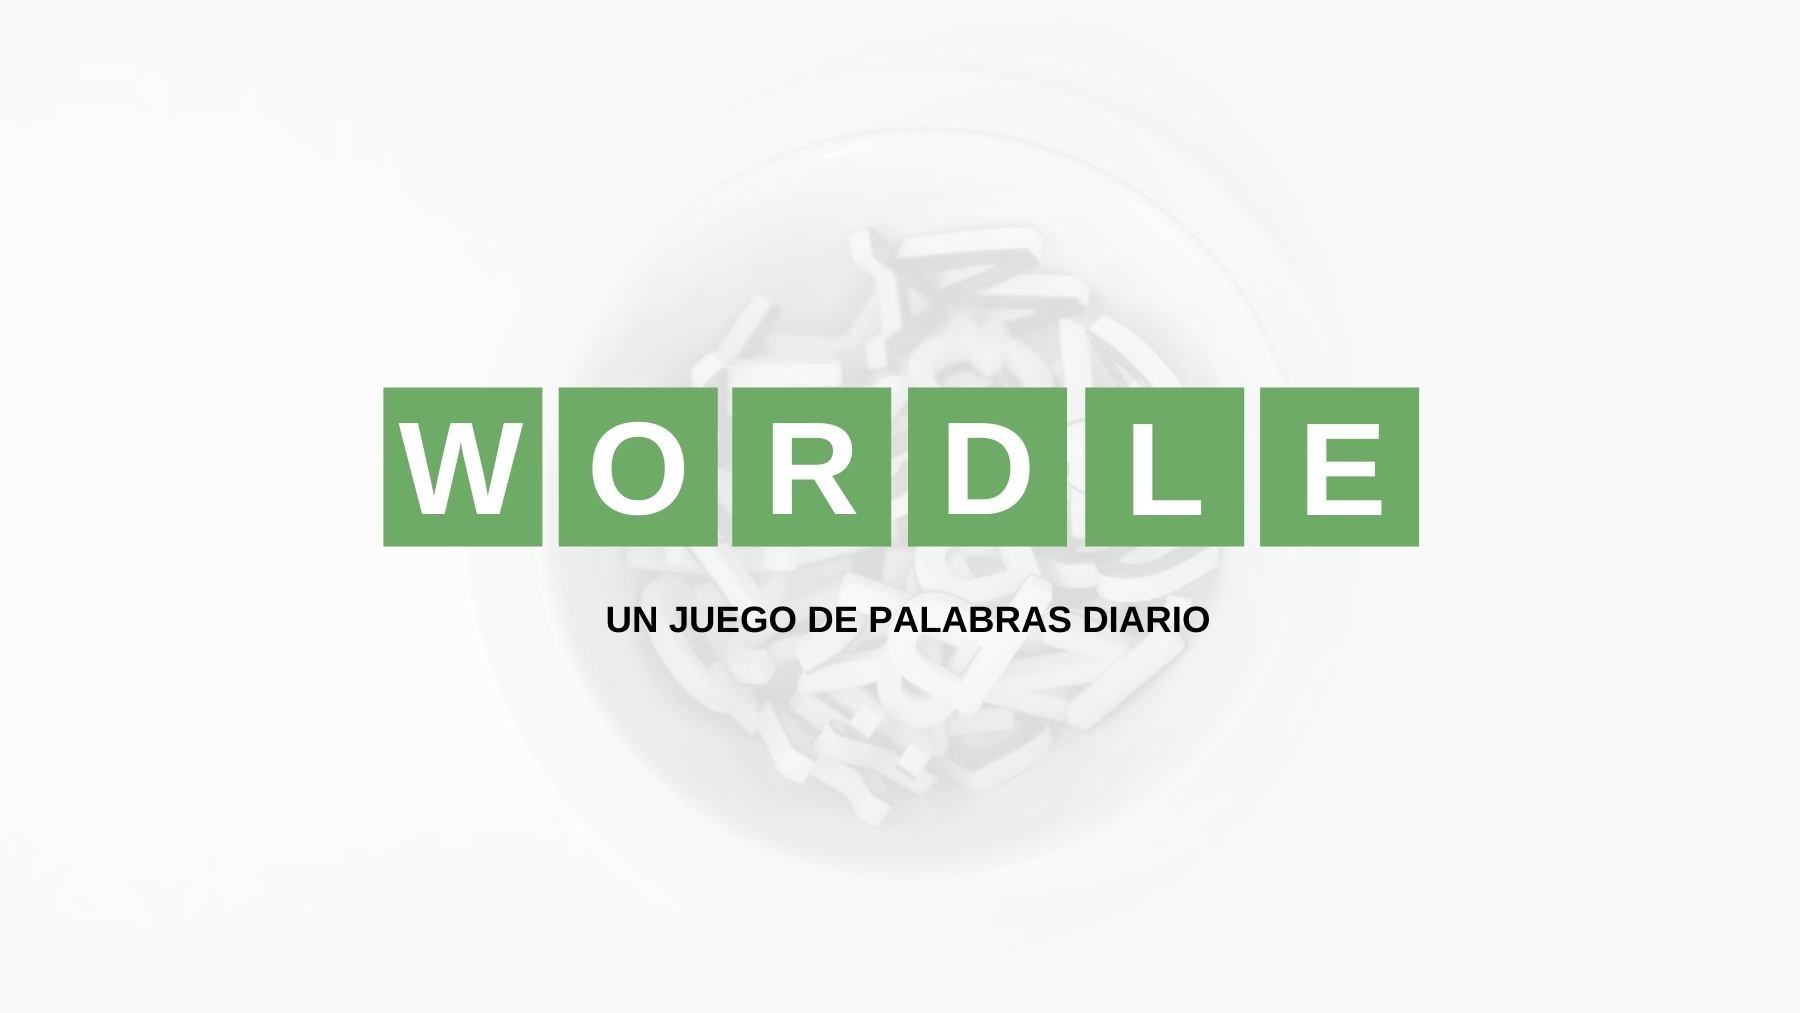 Solución palabra Wordle español, científico y con tildes hoy, lunes 1 de agosto de 2022